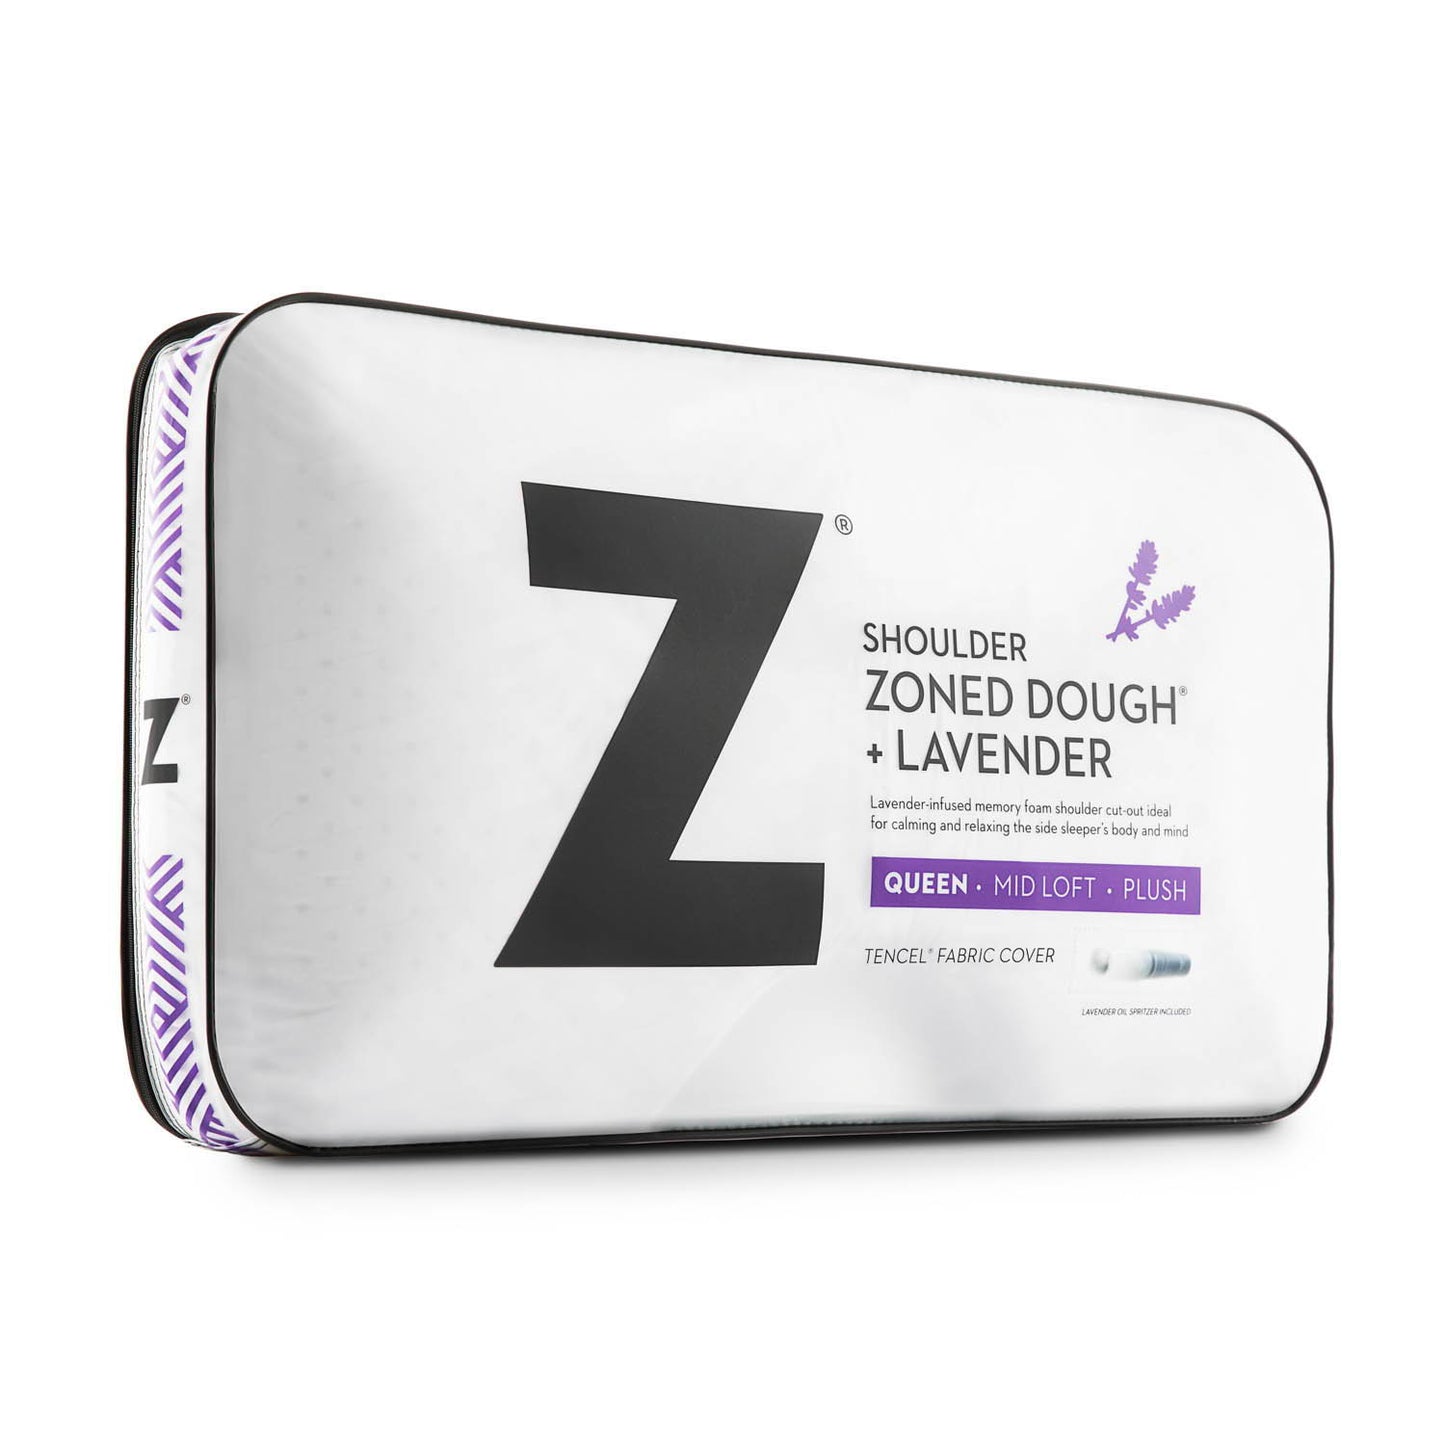 Shoulder Zoned Dough + Lavender - Pillow